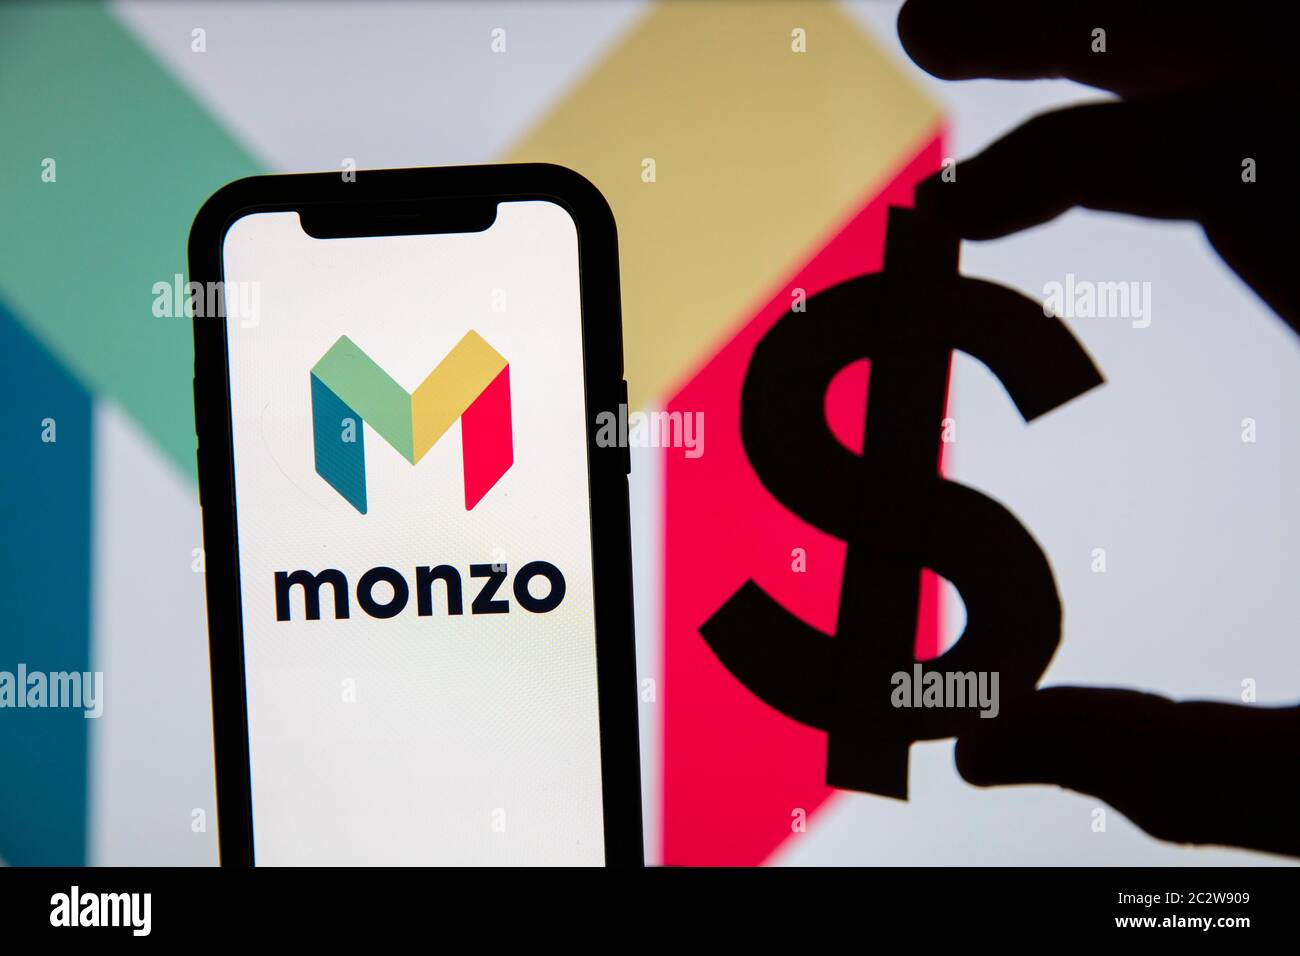 LONDRES, Reino Unido - Junio 2020: Monzo online banking logo con símbolo de moneda Foto de stock